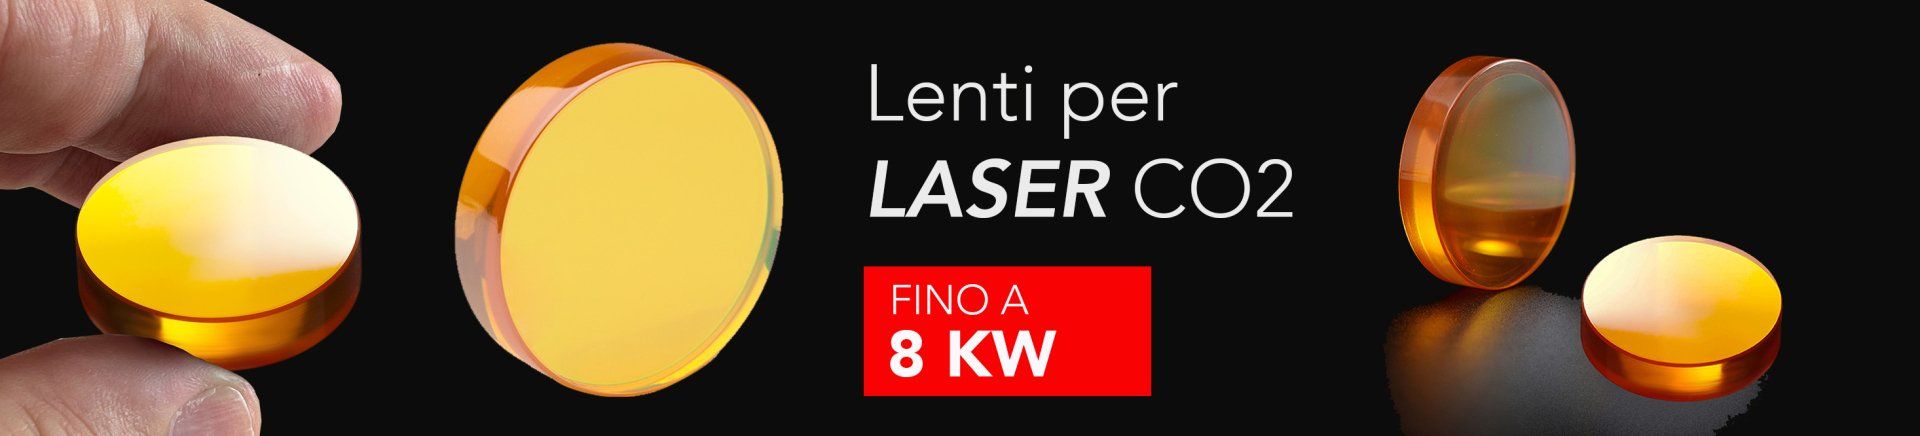 lenti laser Amada